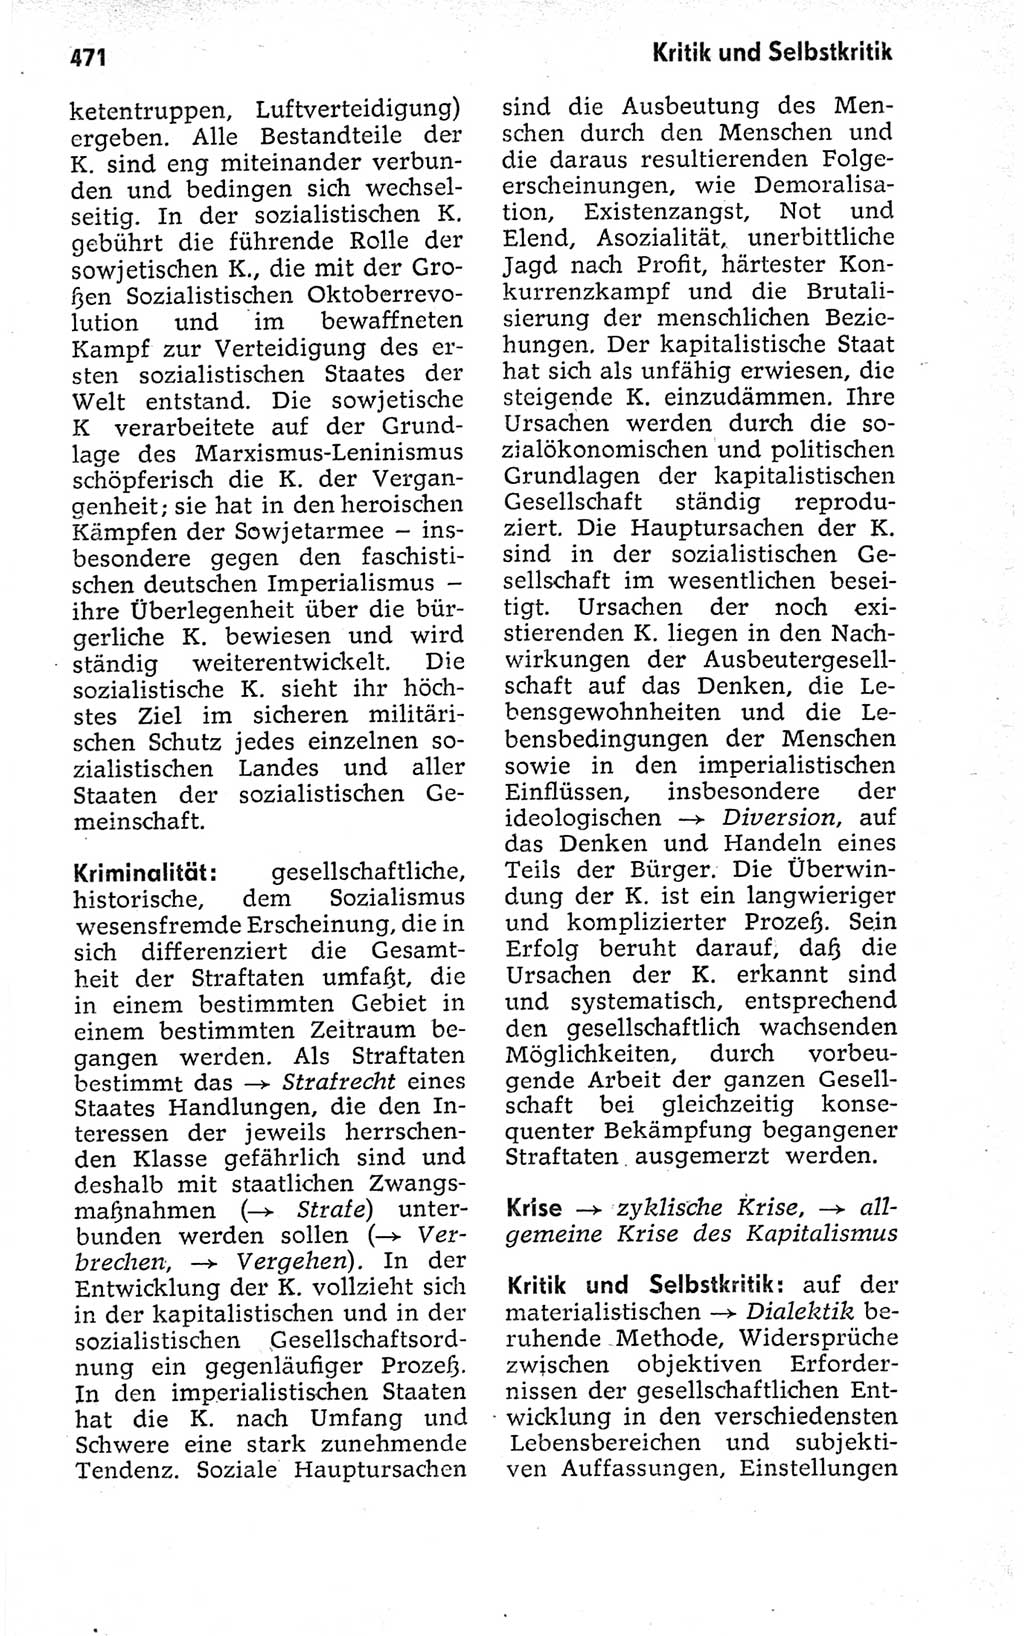 Kleines politisches Wörterbuch [Deutsche Demokratische Republik (DDR)] 1973, Seite 471 (Kl. pol. Wb. DDR 1973, S. 471)